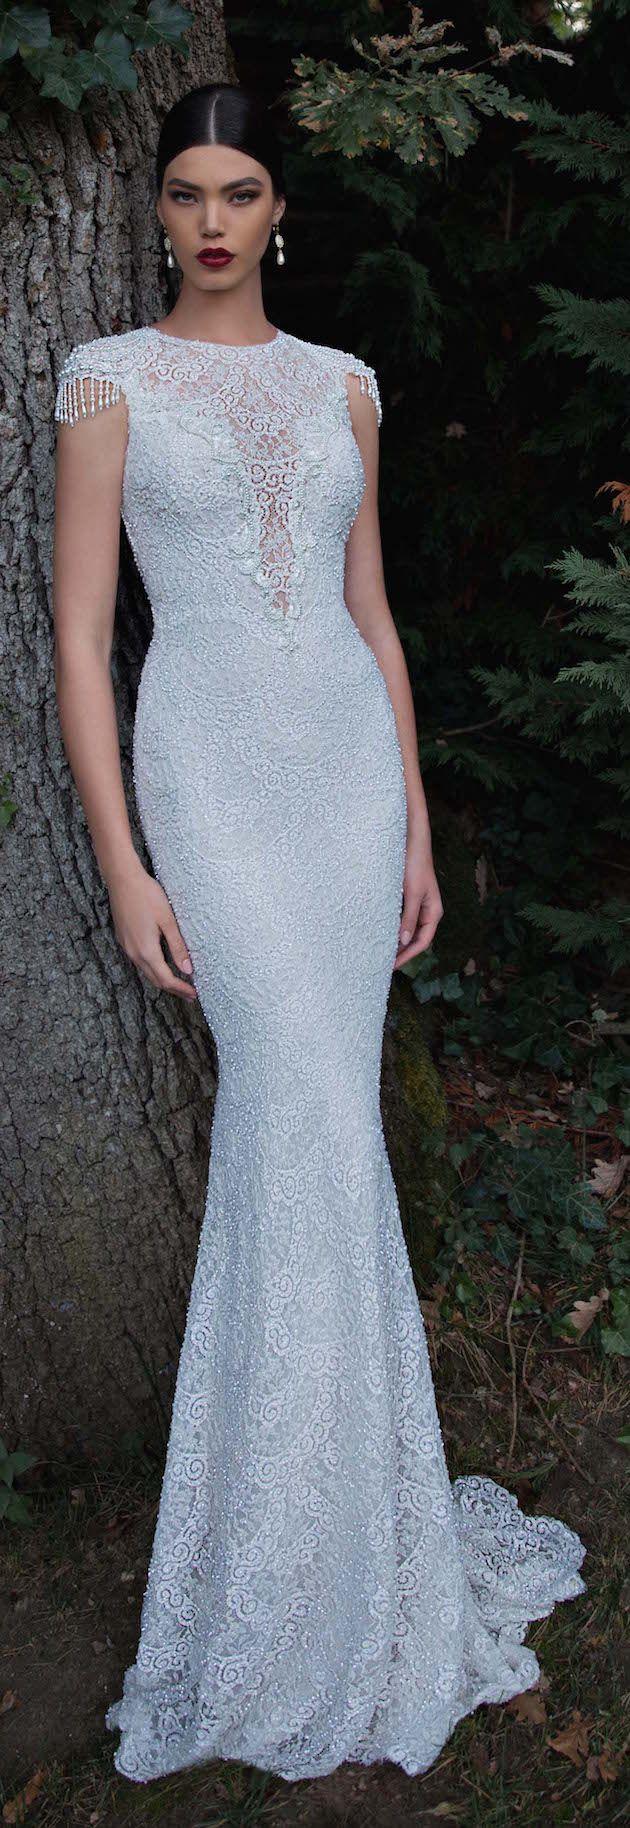 زفاف - Stunning Berta Wedding Dress Collection 2015 (Part 1)